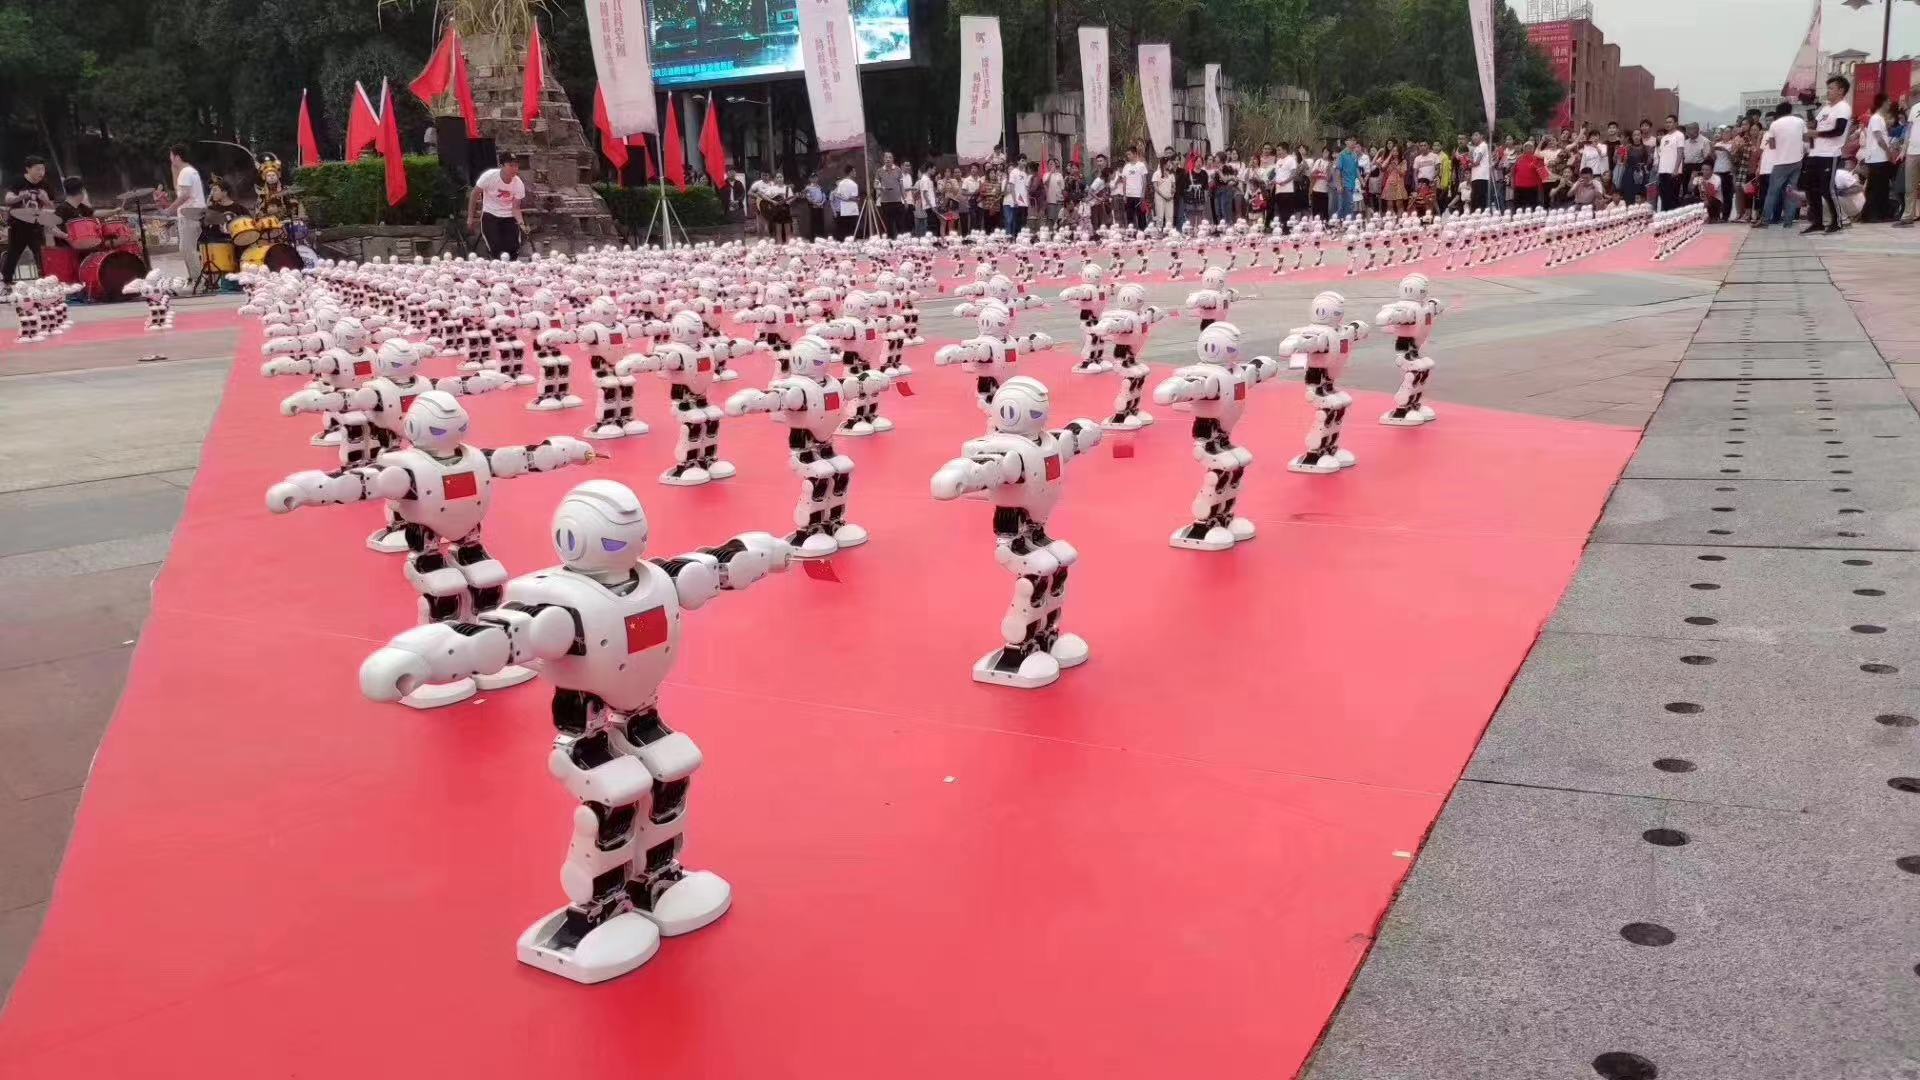 阿尔法机器人舞蹈